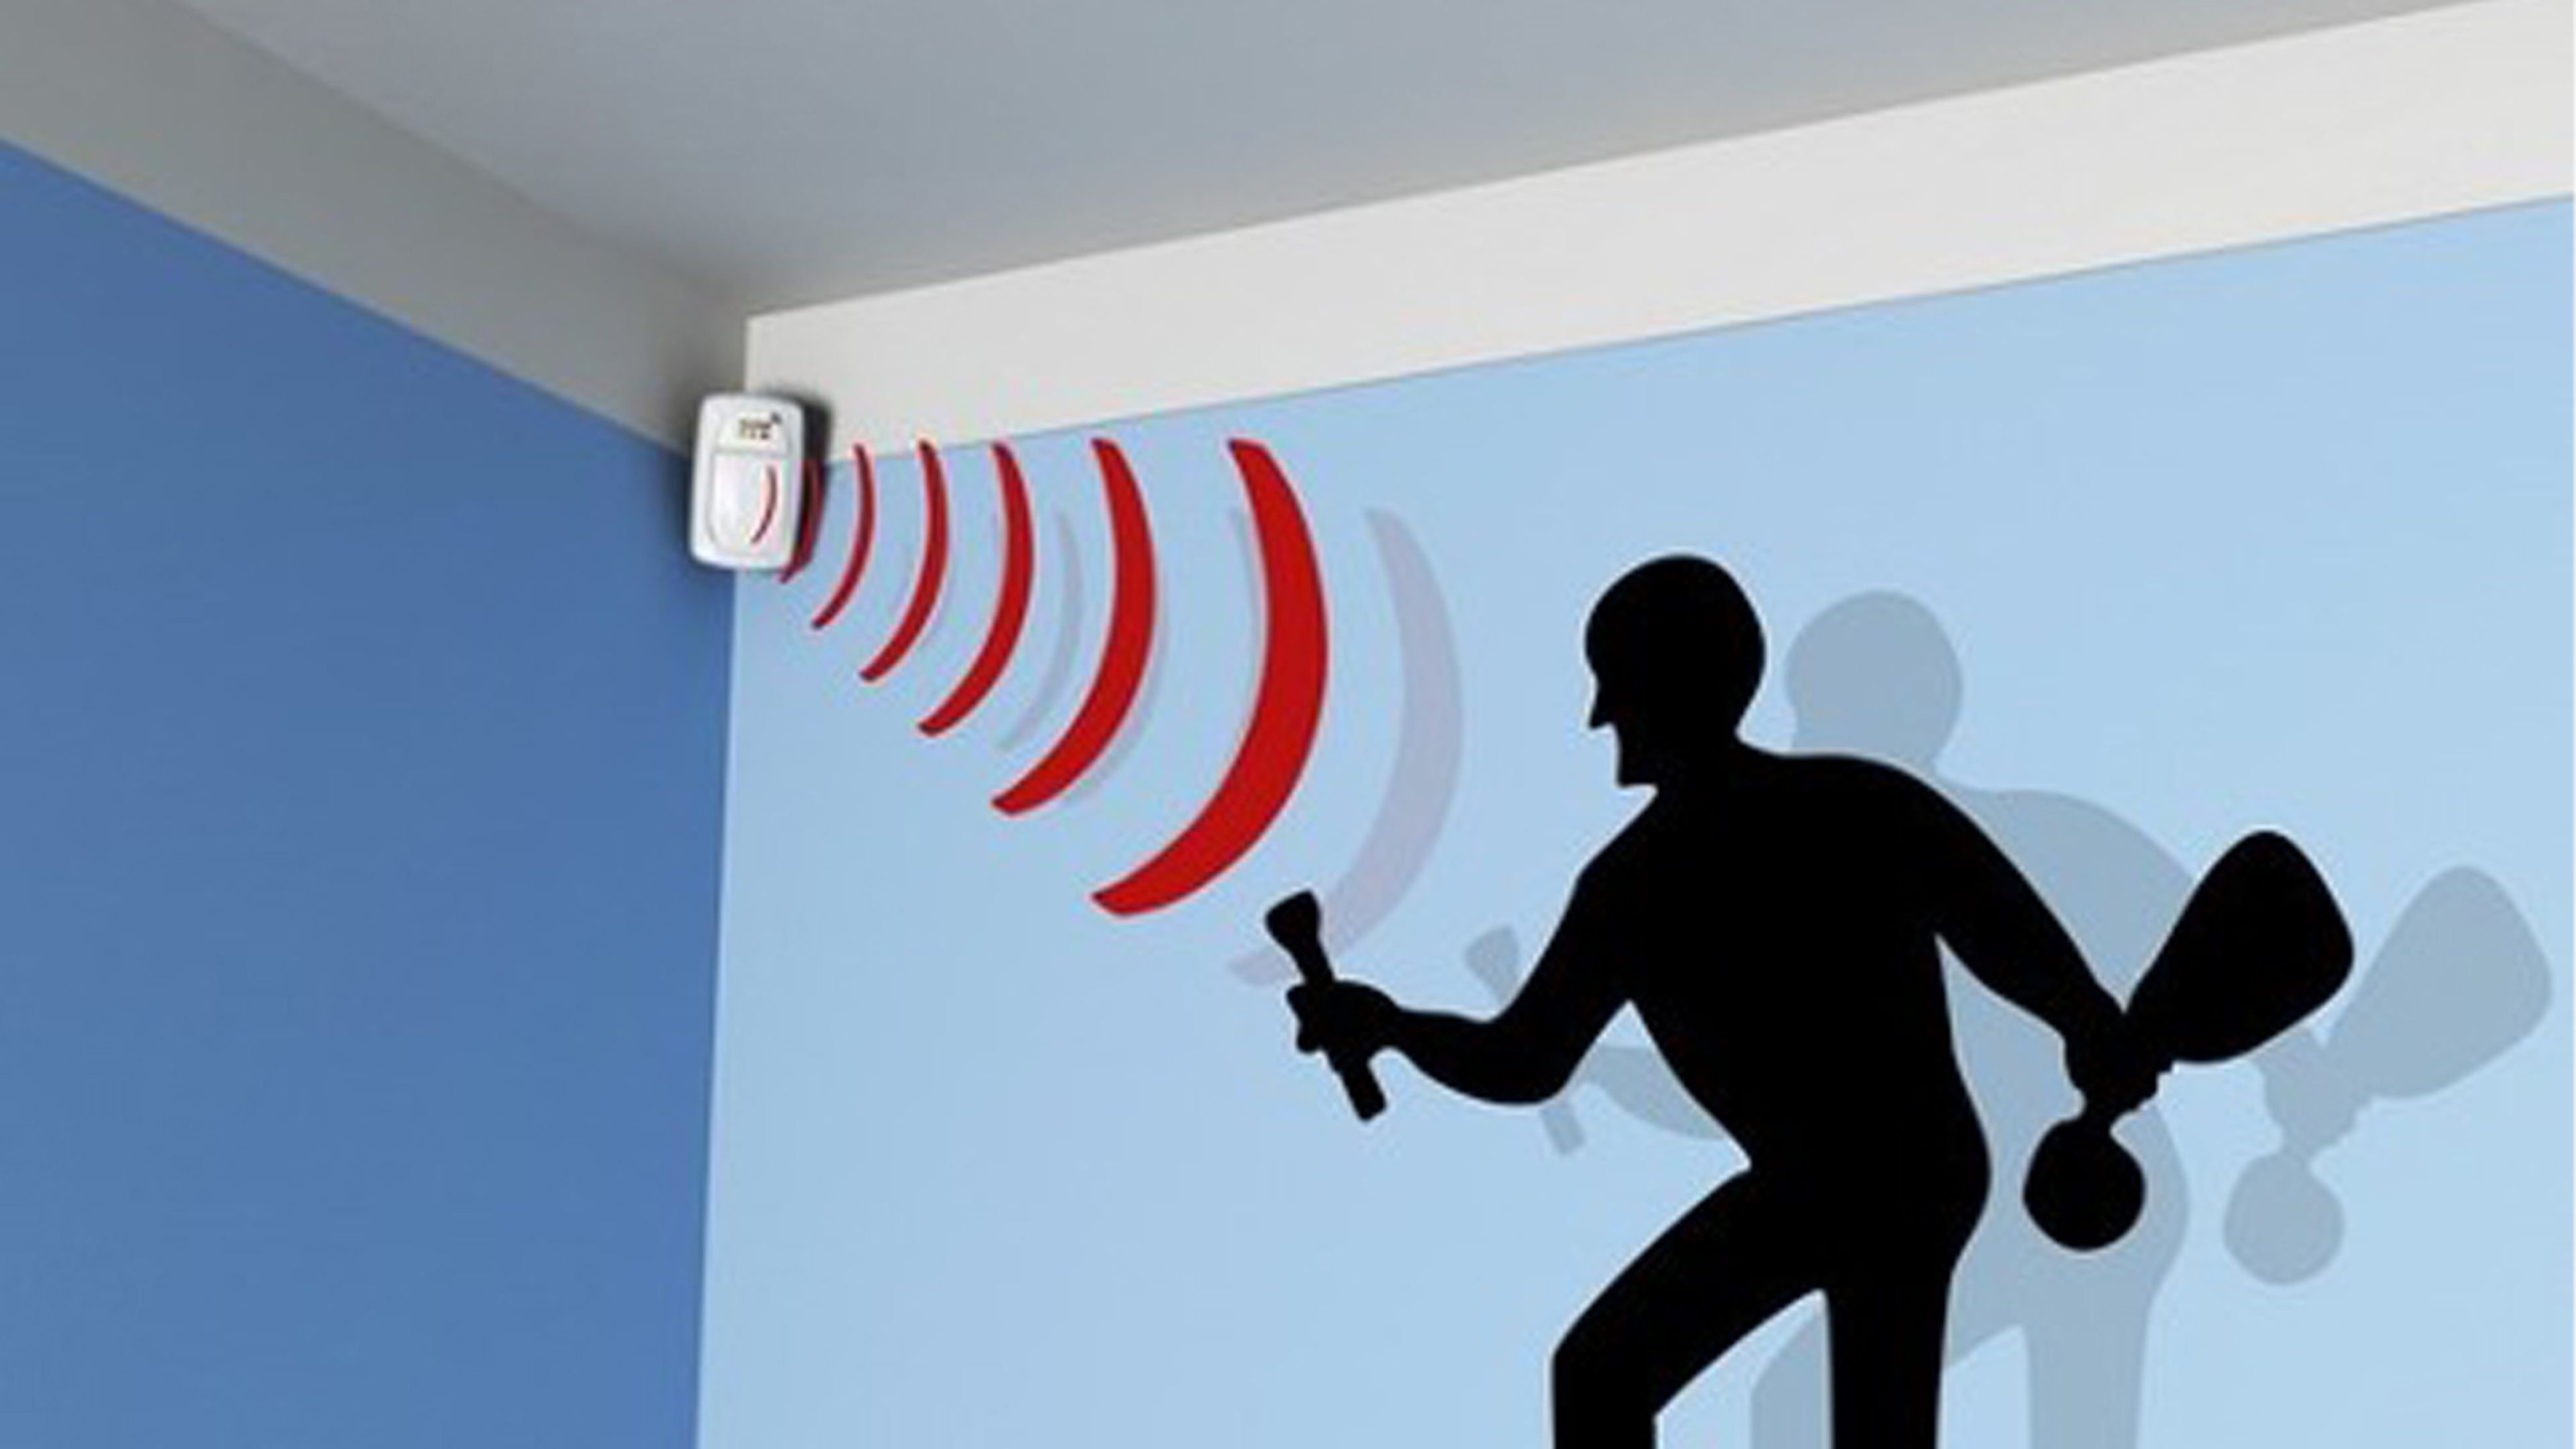 Guía para comprar una alarma para el hogar con sensores de movimiento |  Computer Hoy